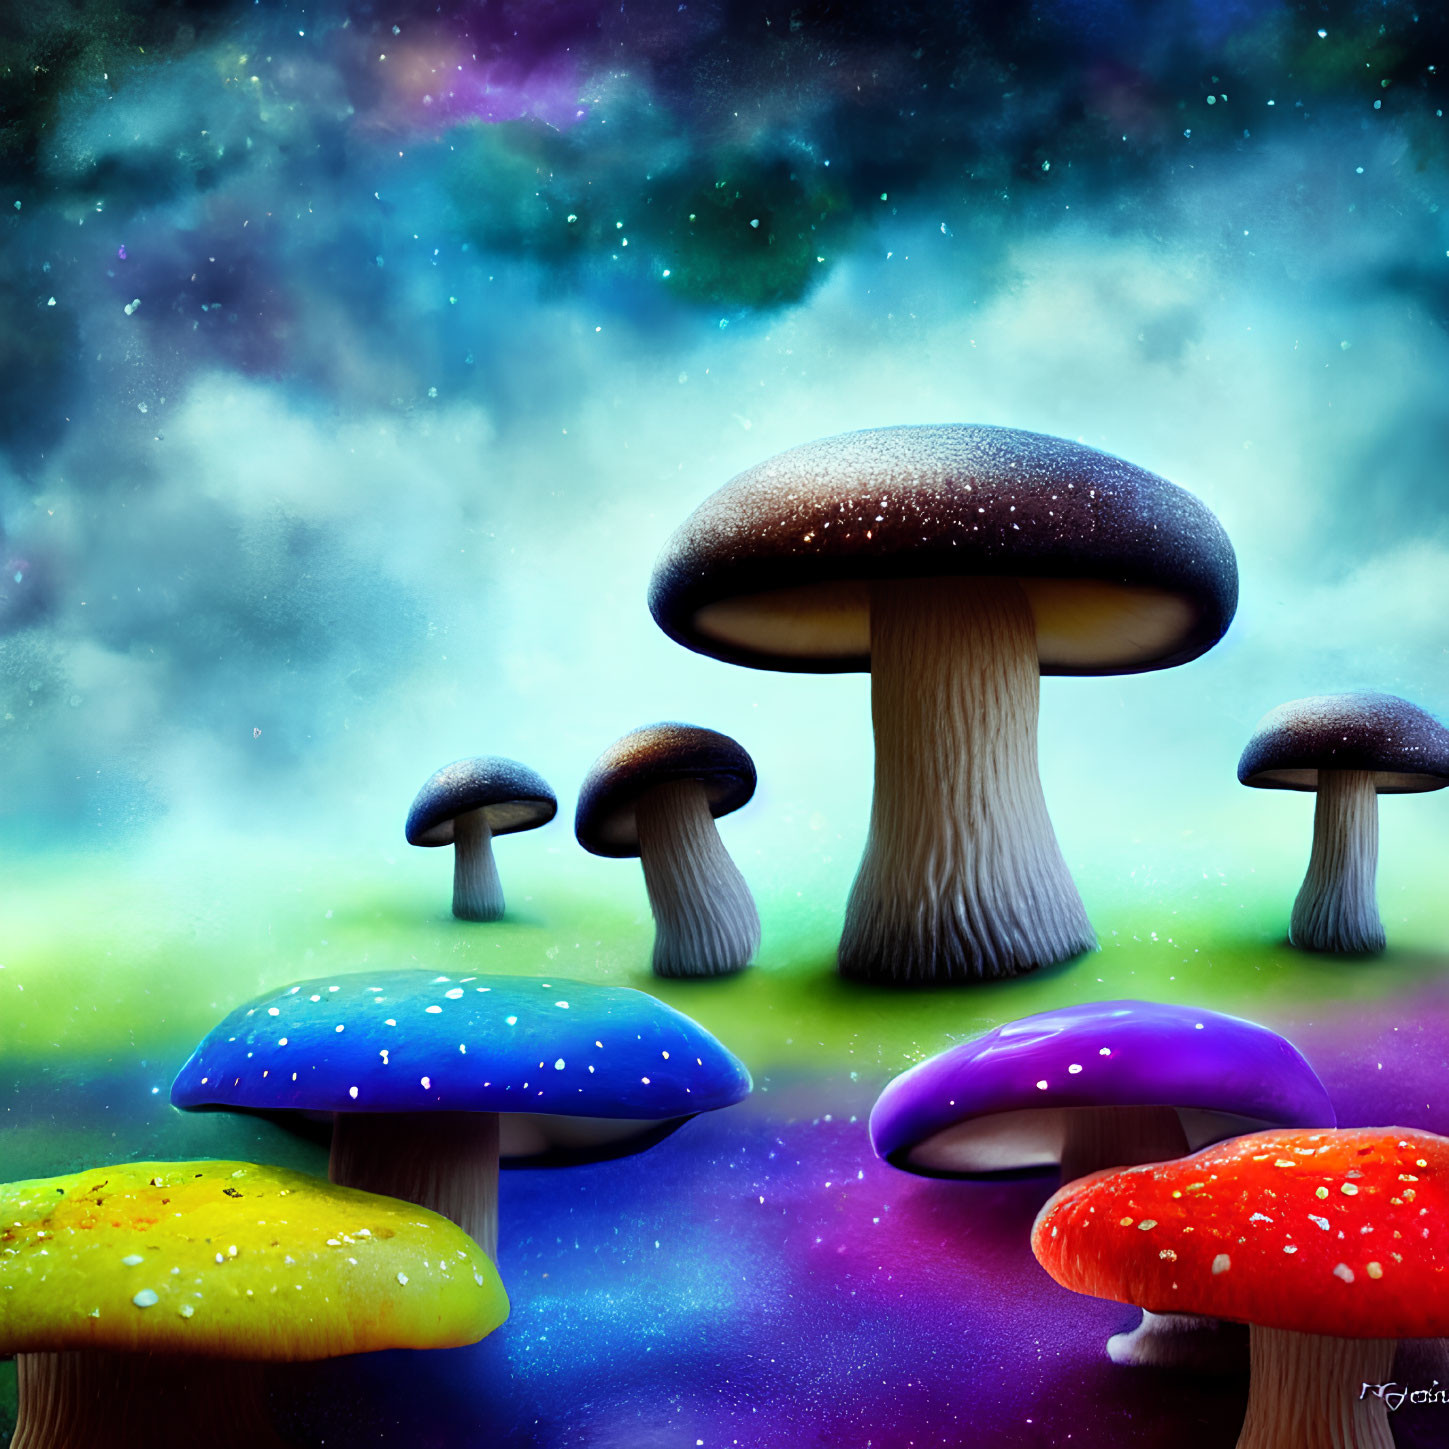 Fantasy-style colorful mushrooms on vibrant nebula background